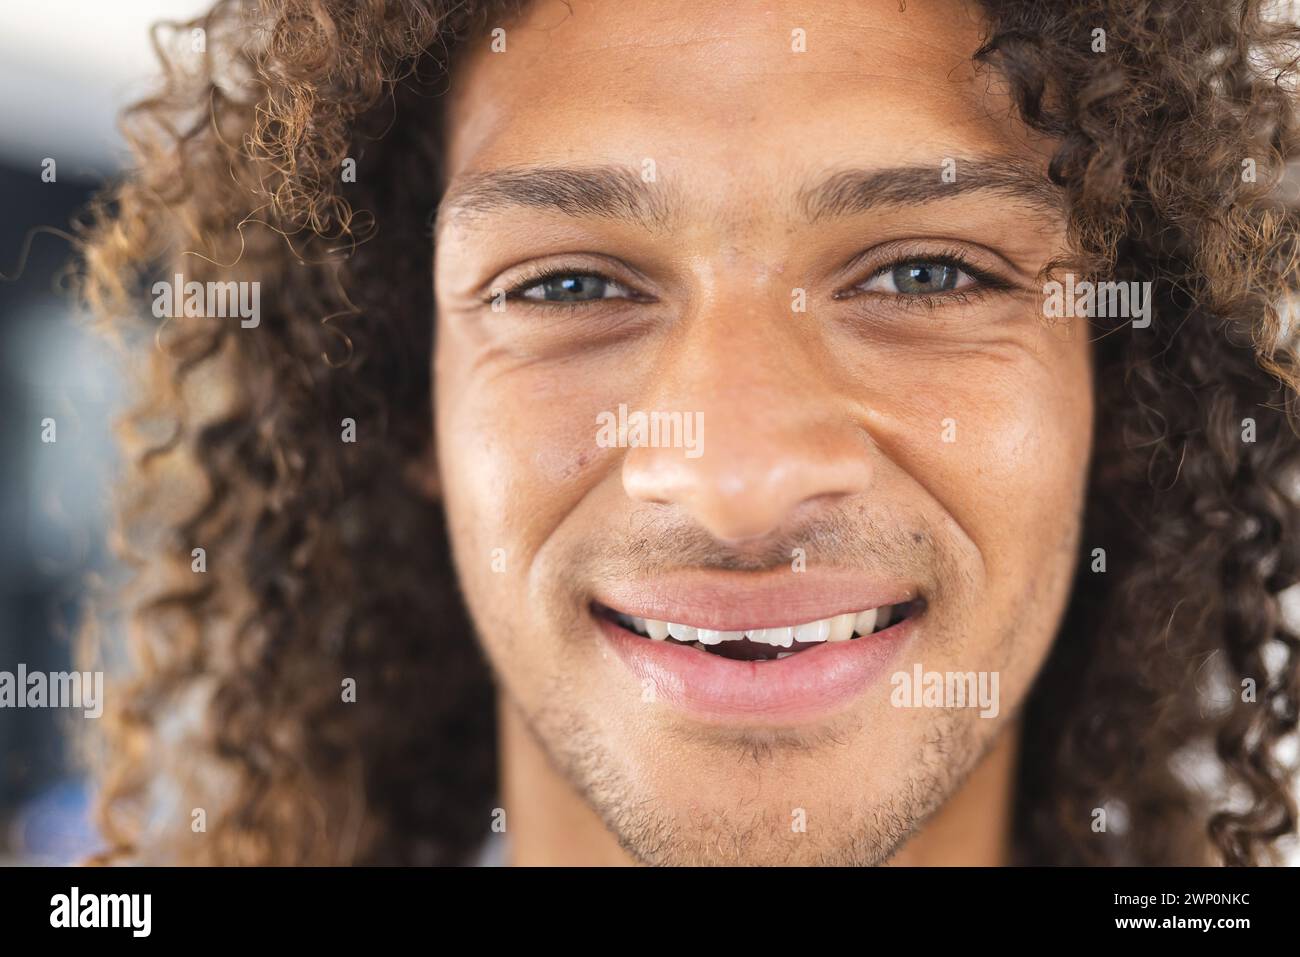 Un jeune homme biracial aux cheveux bouclés sourit chaleureusement à la caméra Banque D'Images